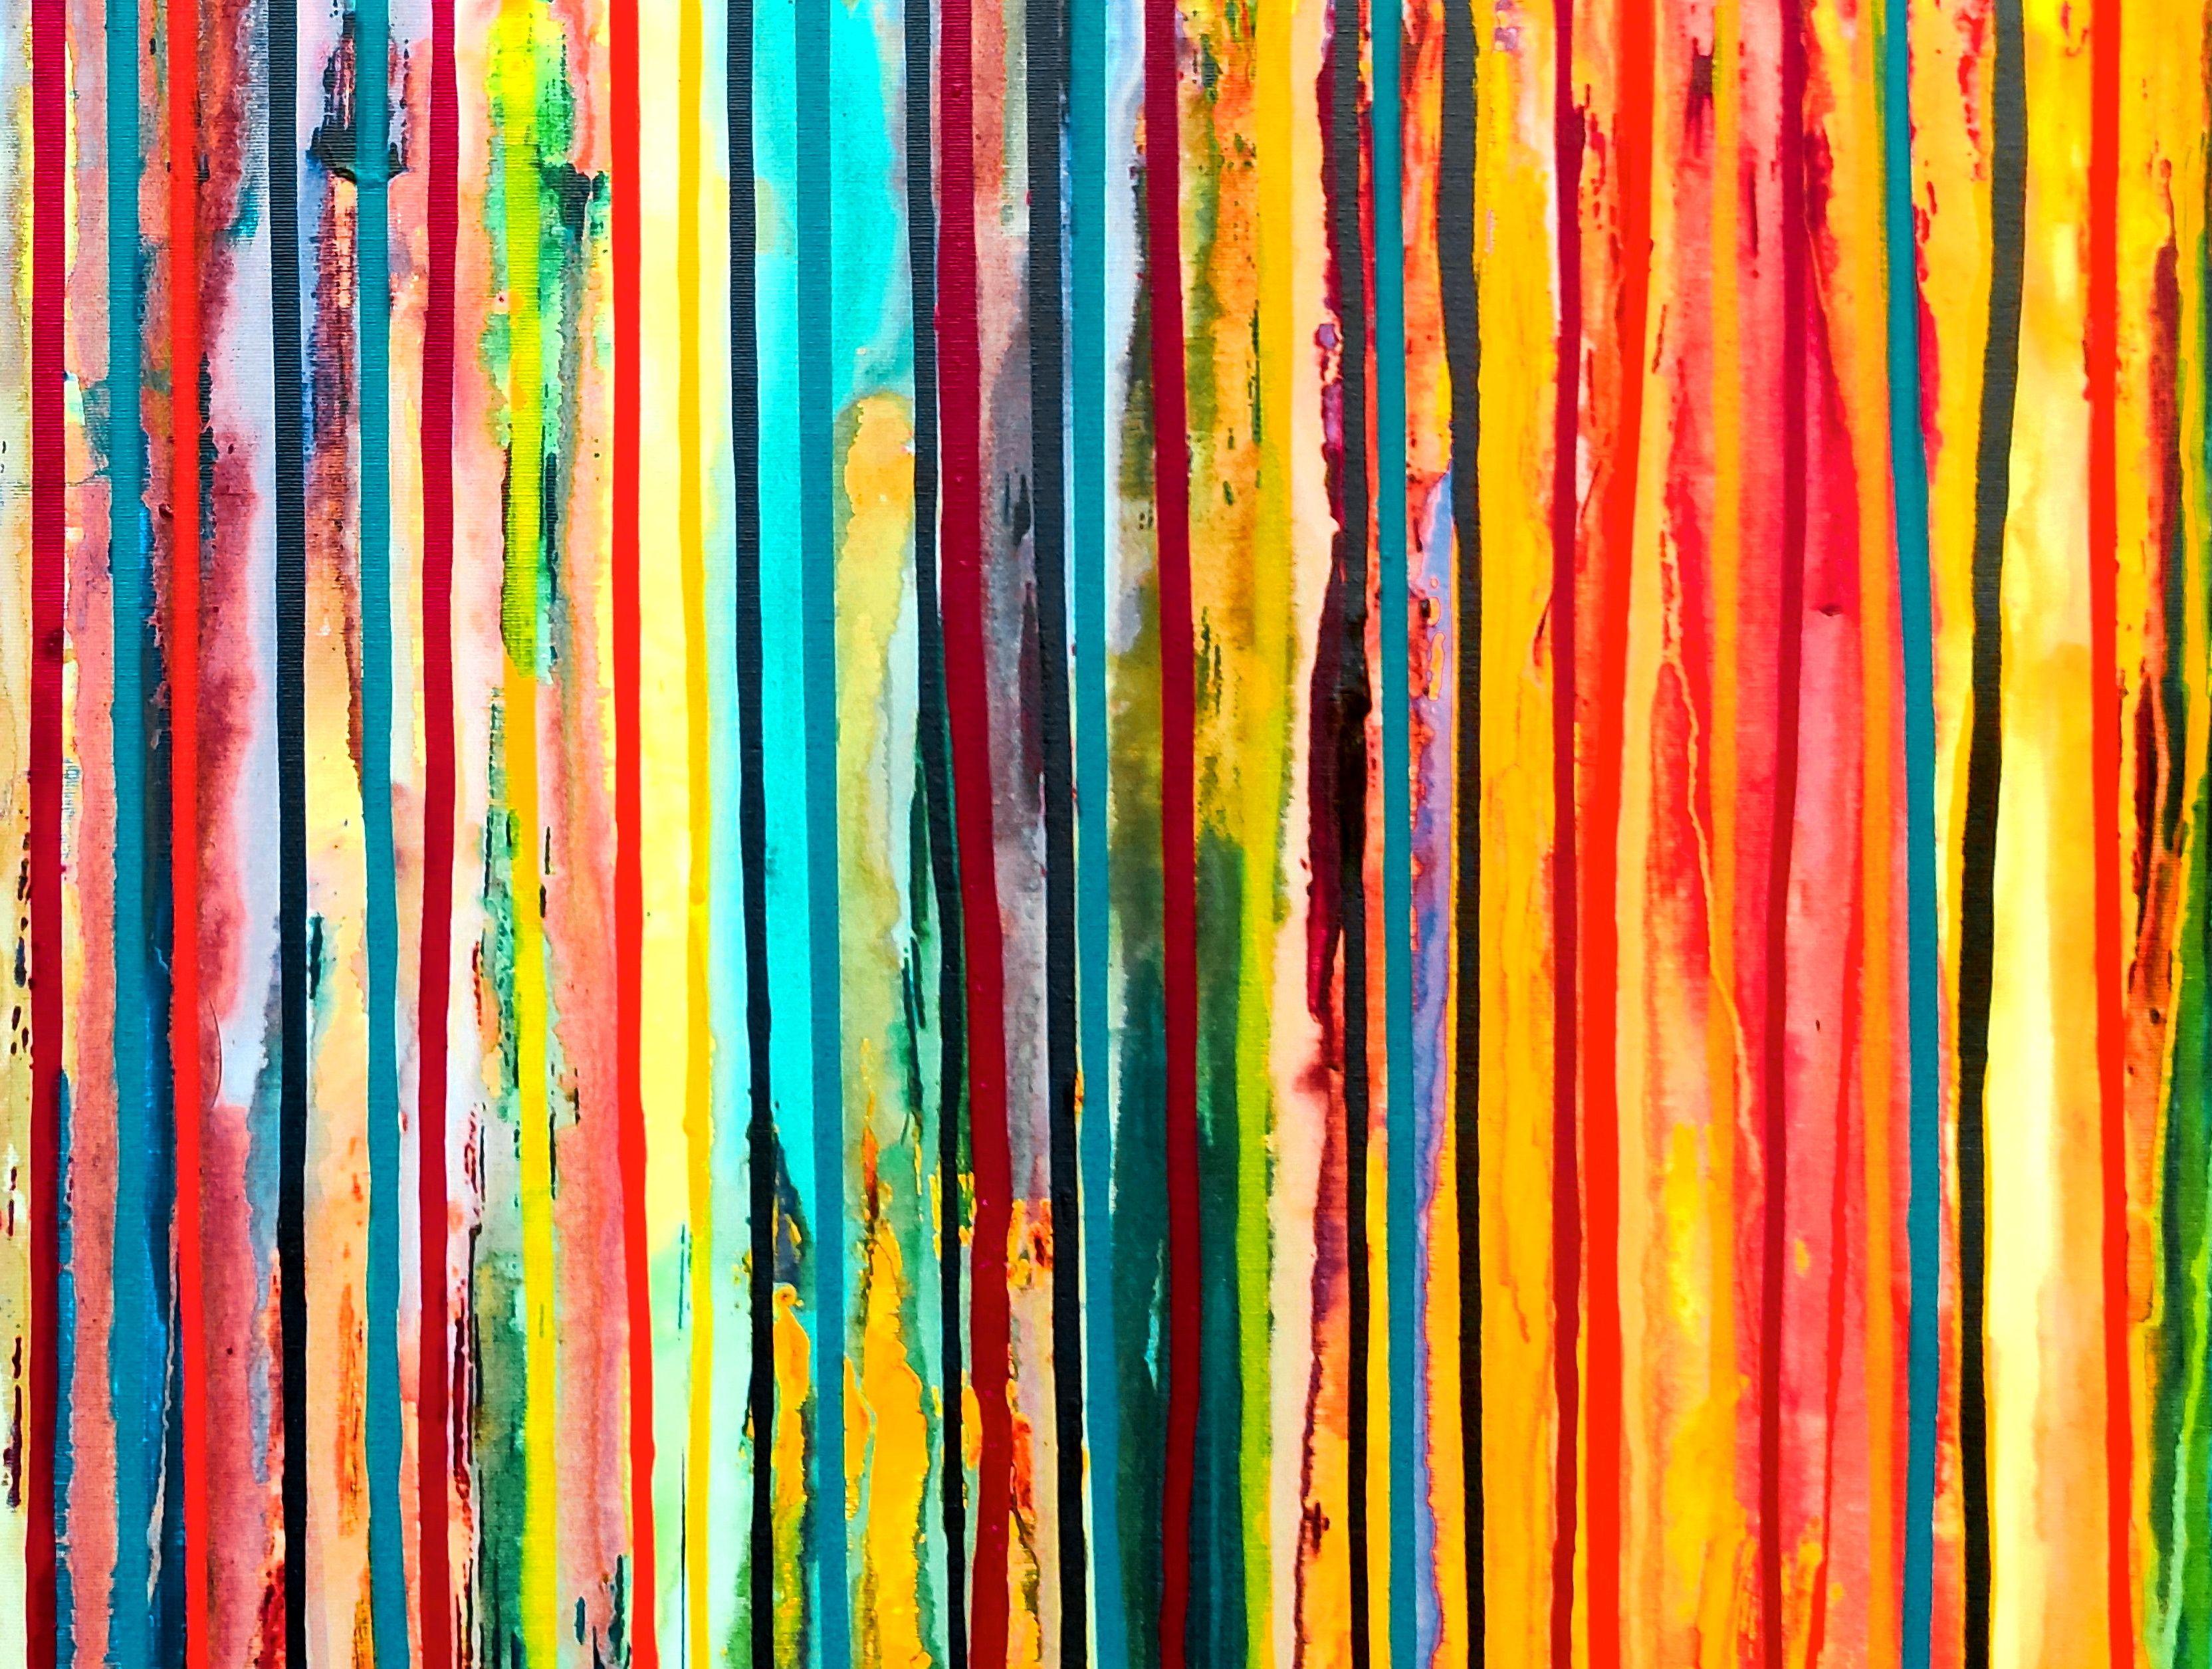 La création émotionnelle n° 353, peinture, acrylique sur toile - Abstrait Painting par Carla Sá Fernandes